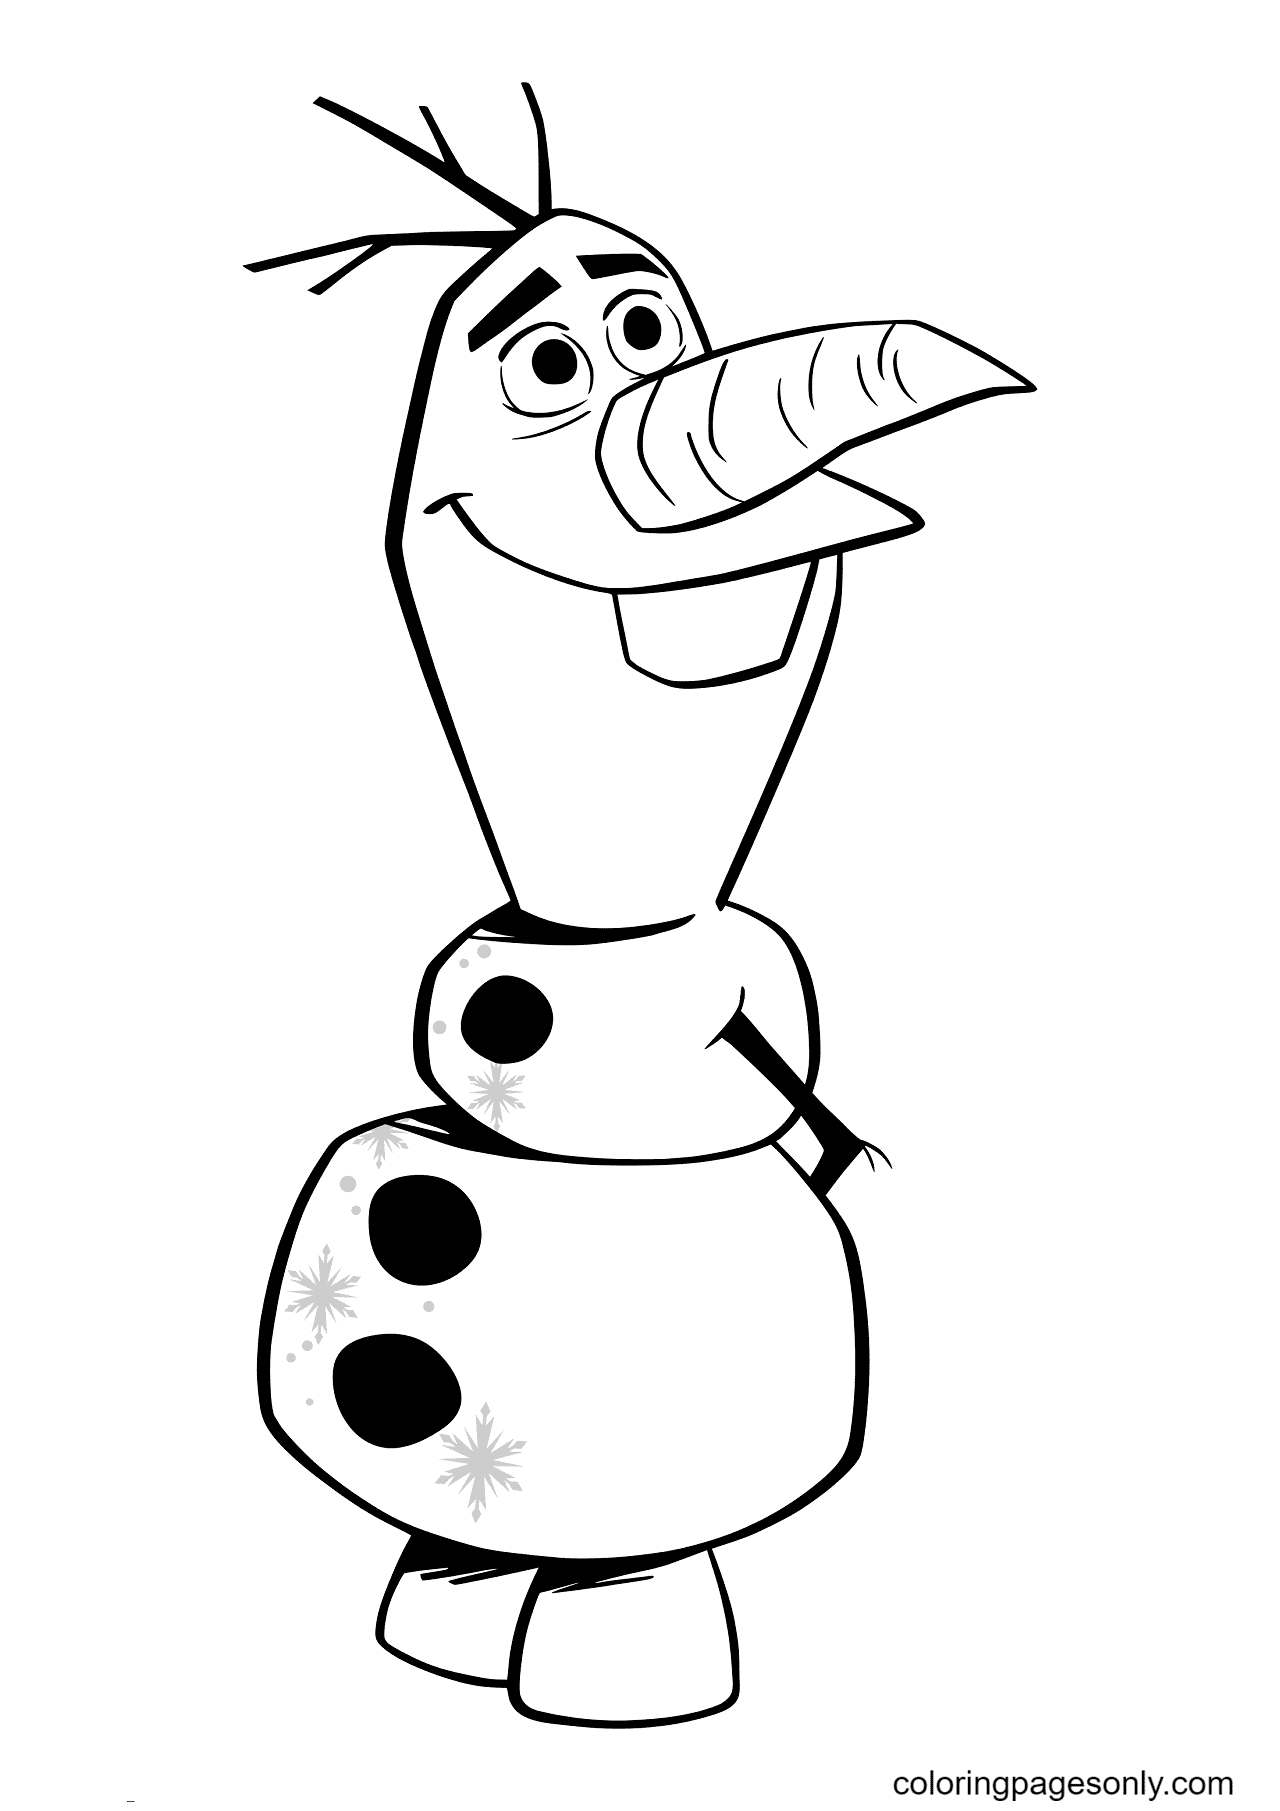 Disney Frozen Olaf von Olaf